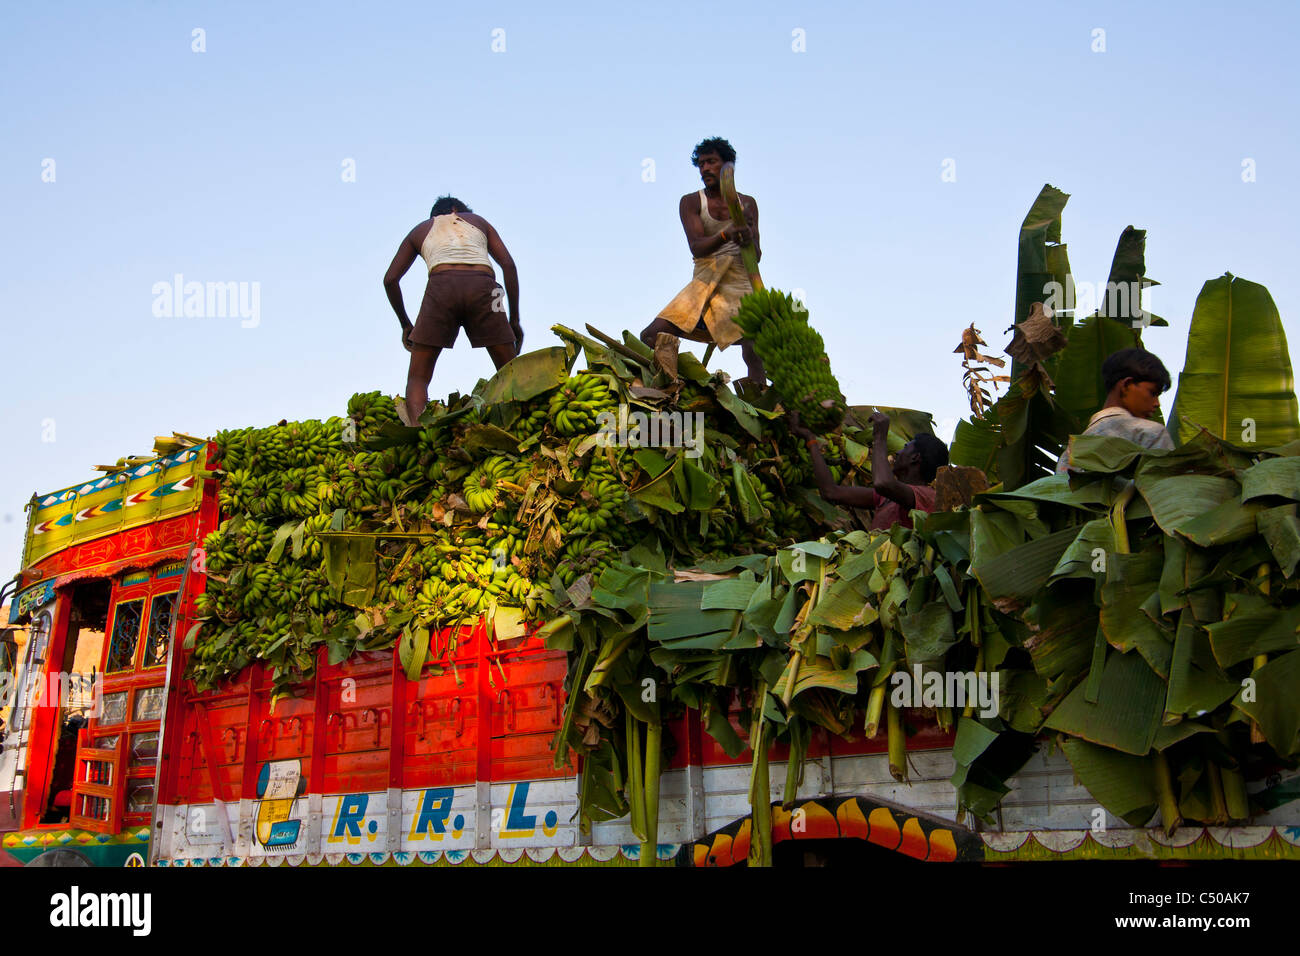 Loading a truck of bananas at harvest, near Hampi, Karnataka province, India Stock Photo